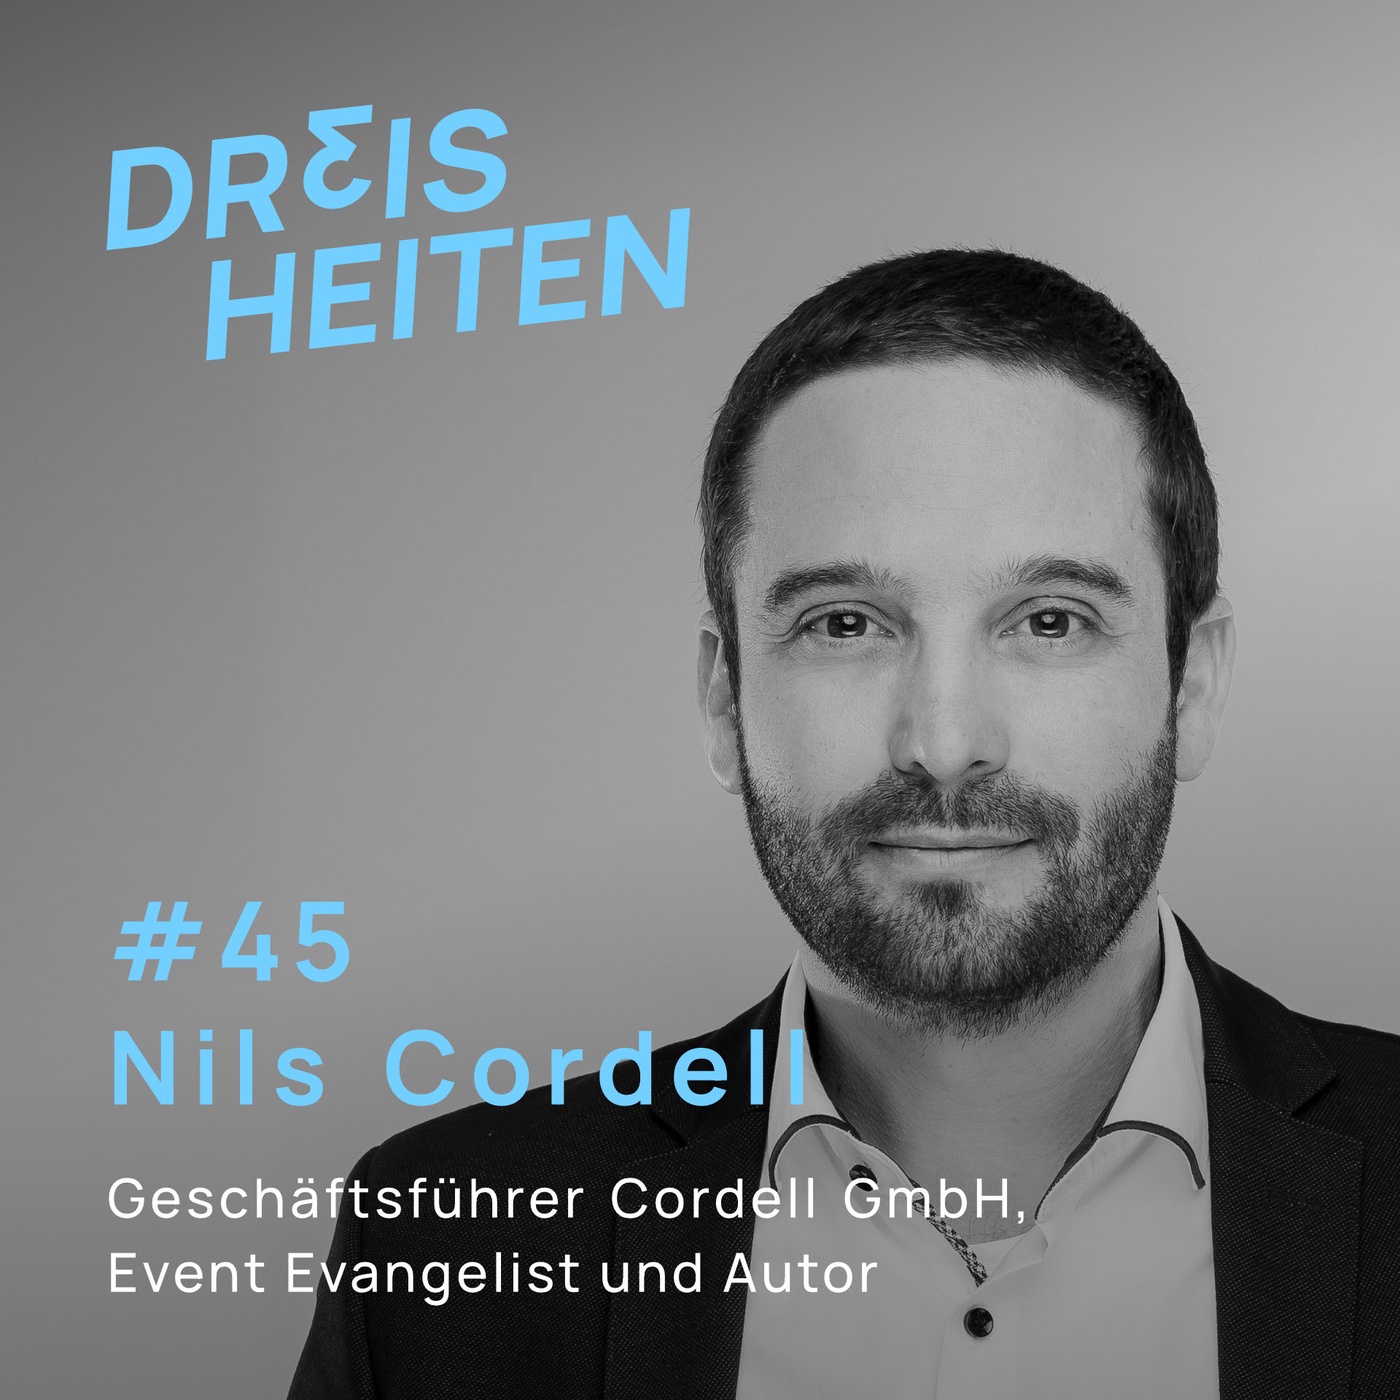 #45 - Nils Cordell - Geschäftsführer Cordell GmbH, Event Evangelist und Autor